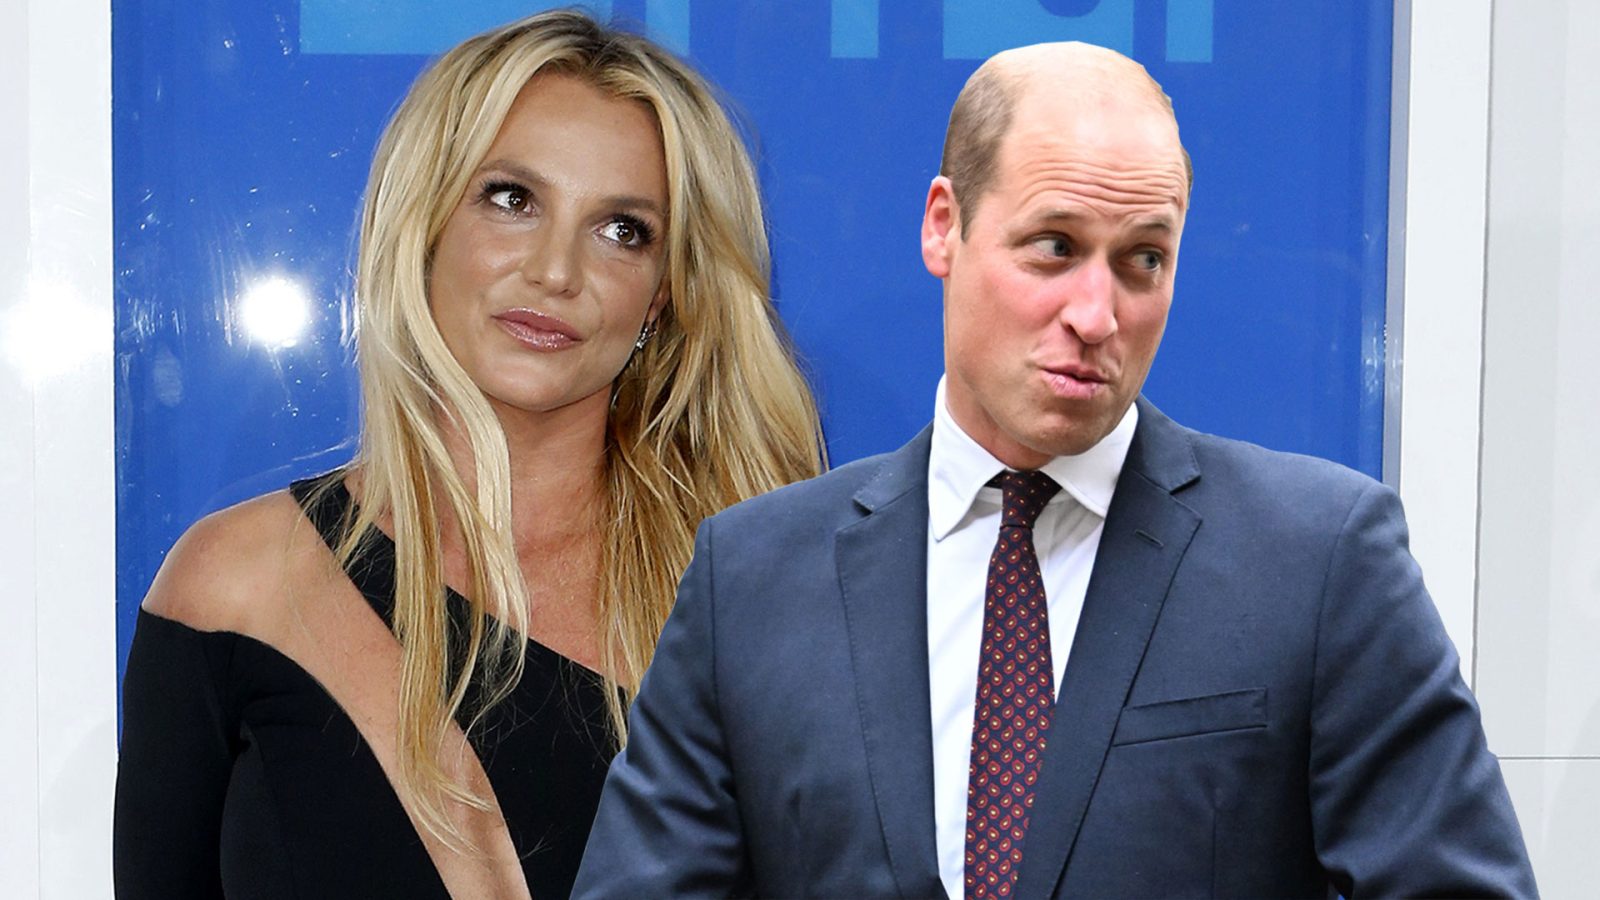 El príncipe Guillermo y Britney Spears, ¿juntos? Sale a la luz su supuesto affaire